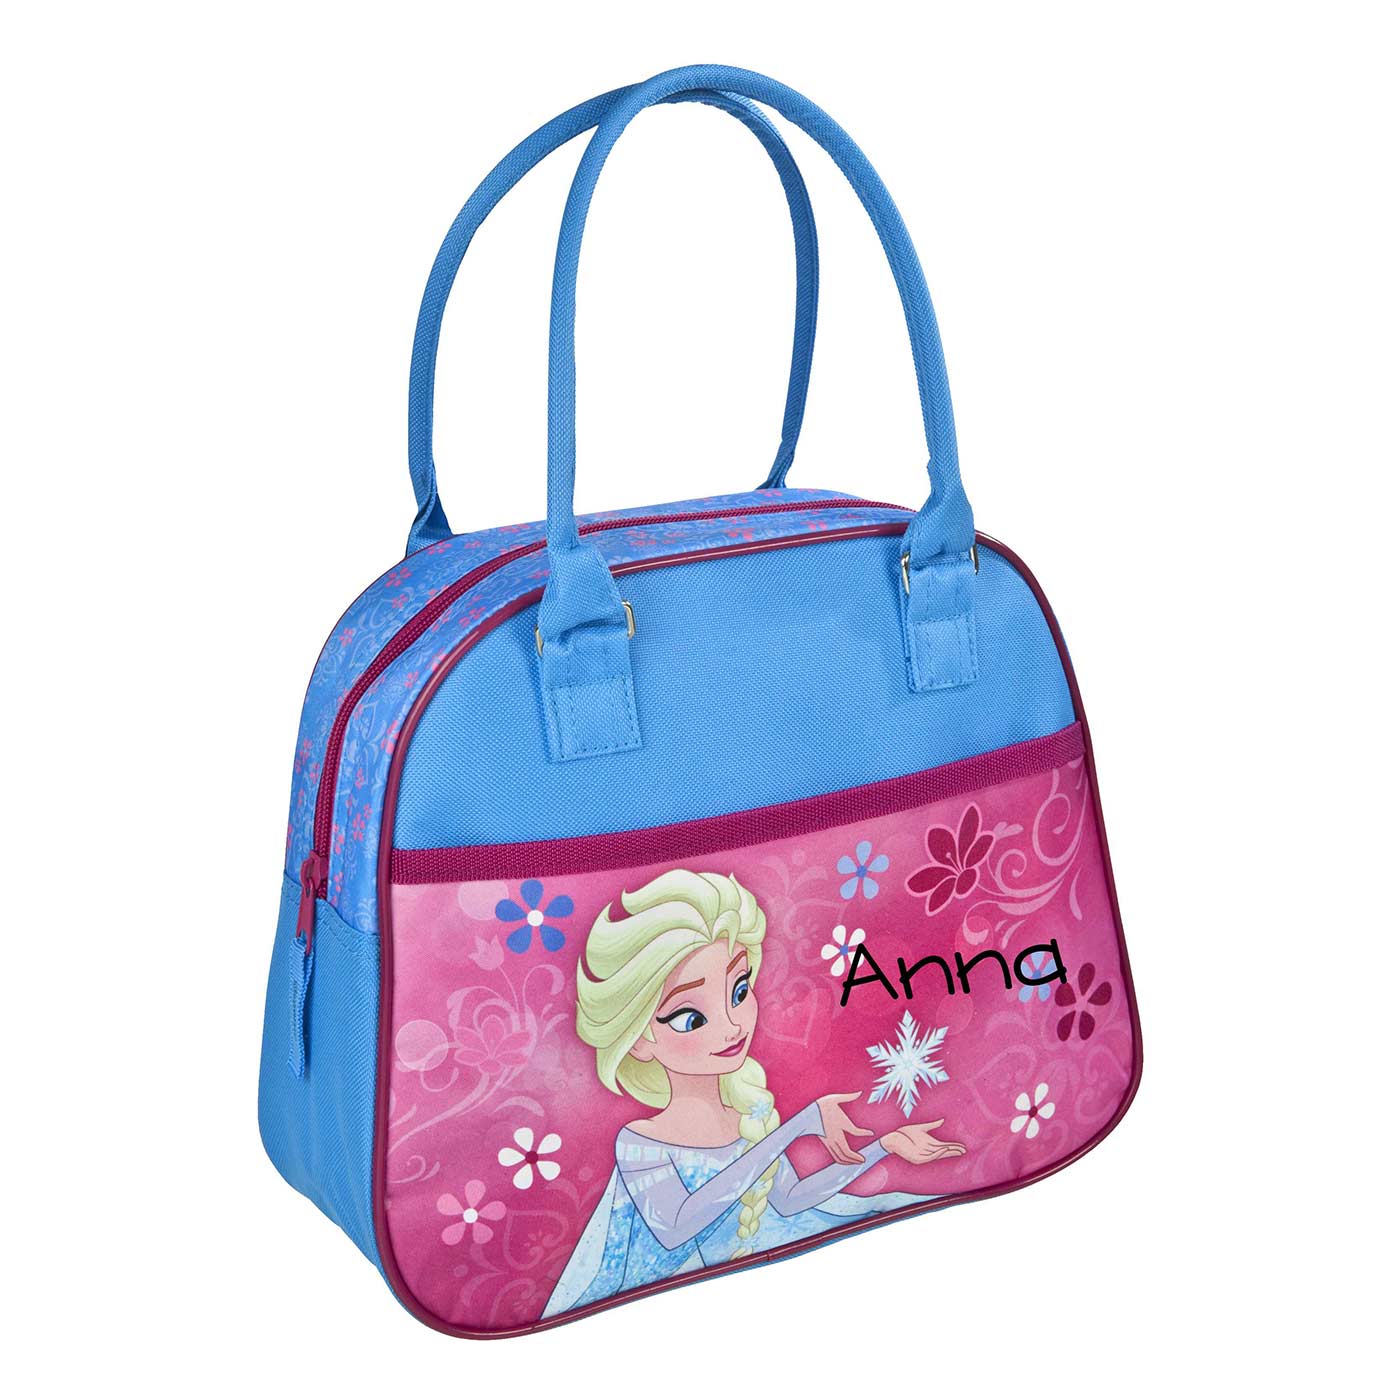 Handtasche "Elsa" (Frozen)